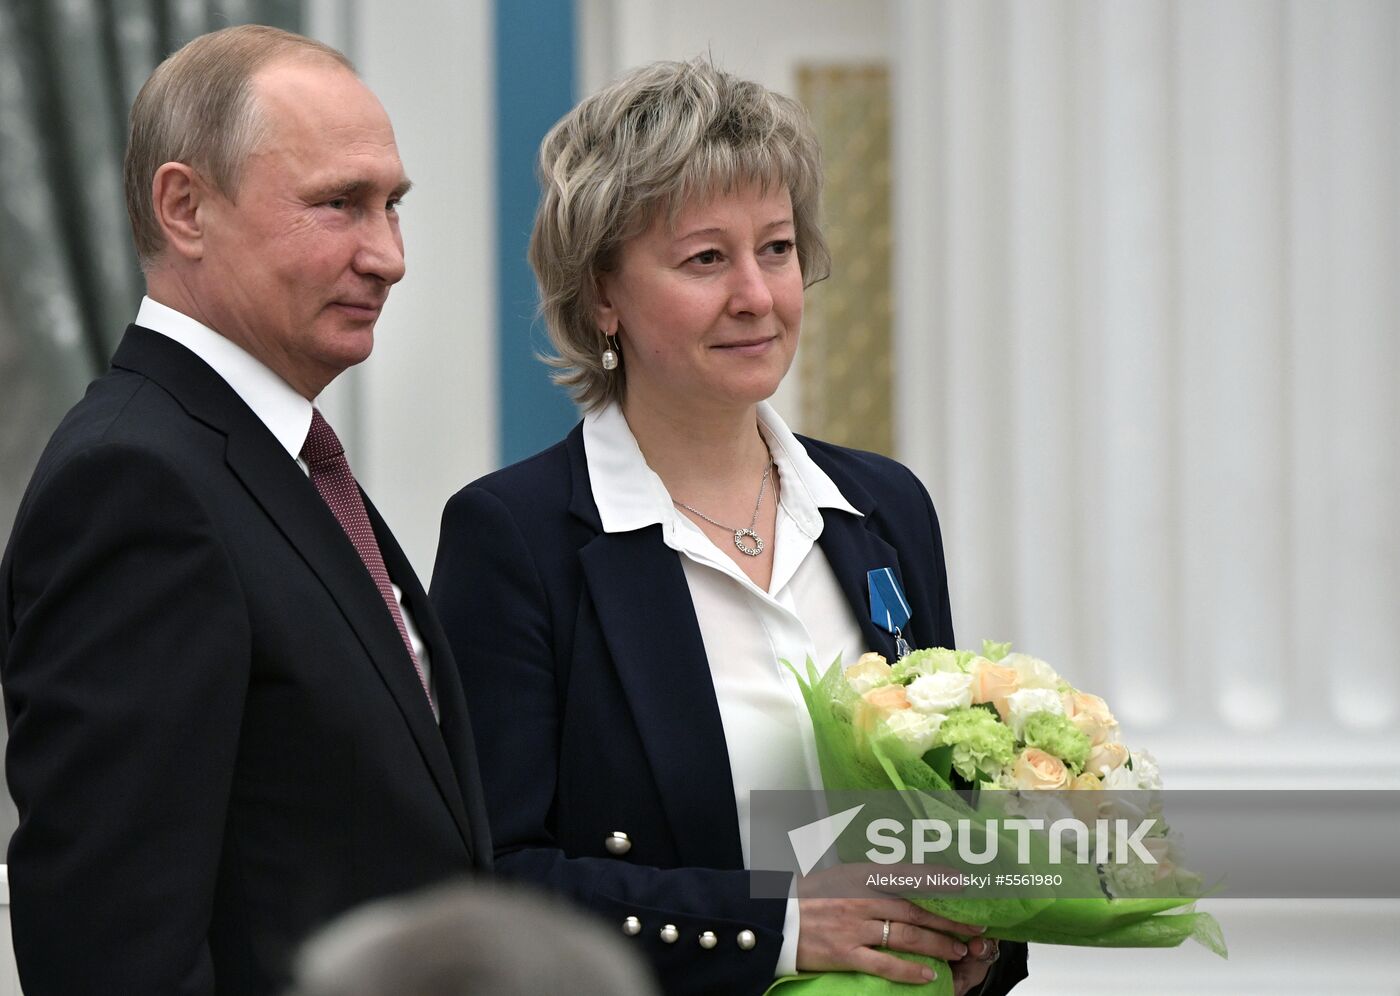 Vladimir Putin presents state prizes in Kremlin